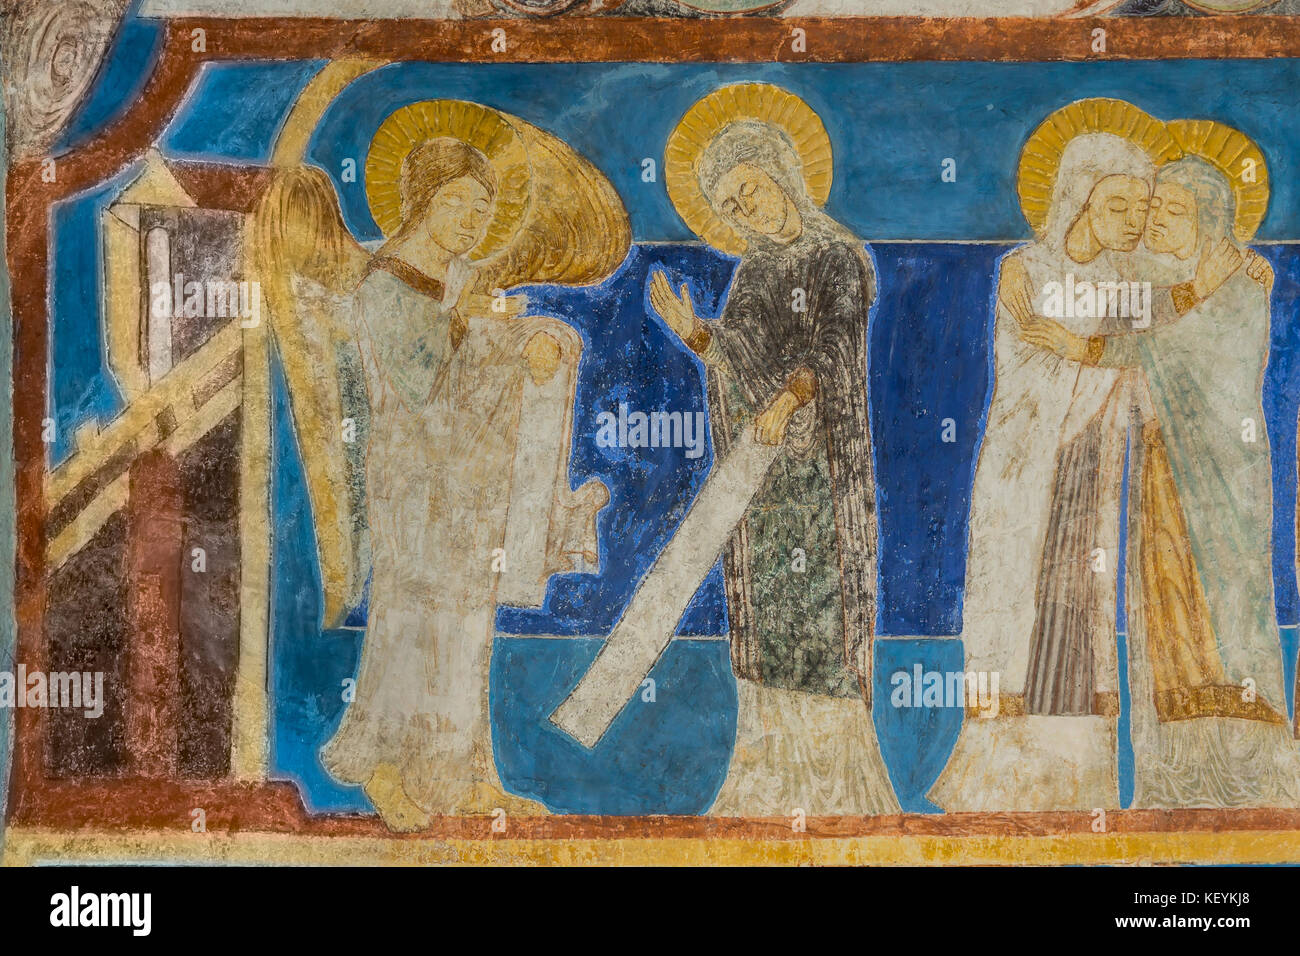 Erzengel Gabriel sagt Mary, dass sie schwanger sein wird. Mary besucht Elisabeth. Fresko in einer mittelalterlichen Kirche. Bjaresjo, Schweden, Septem Stockfoto